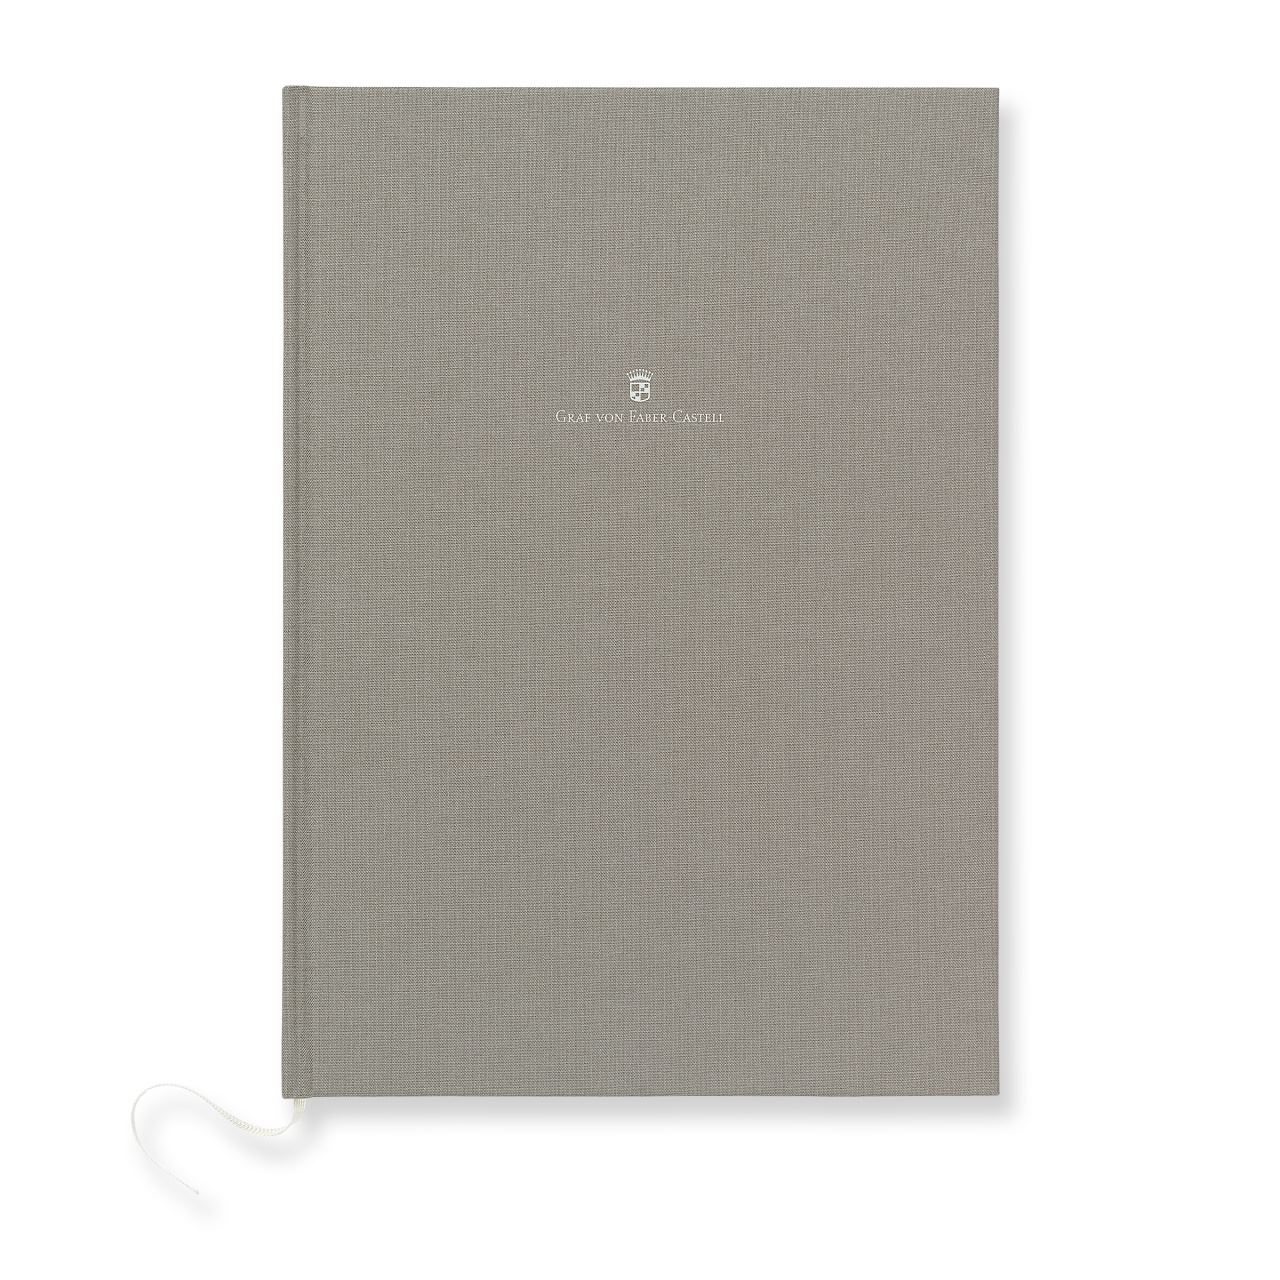 Graf-von-Faber-Castell - Linen-bound book A4 Stone Grey